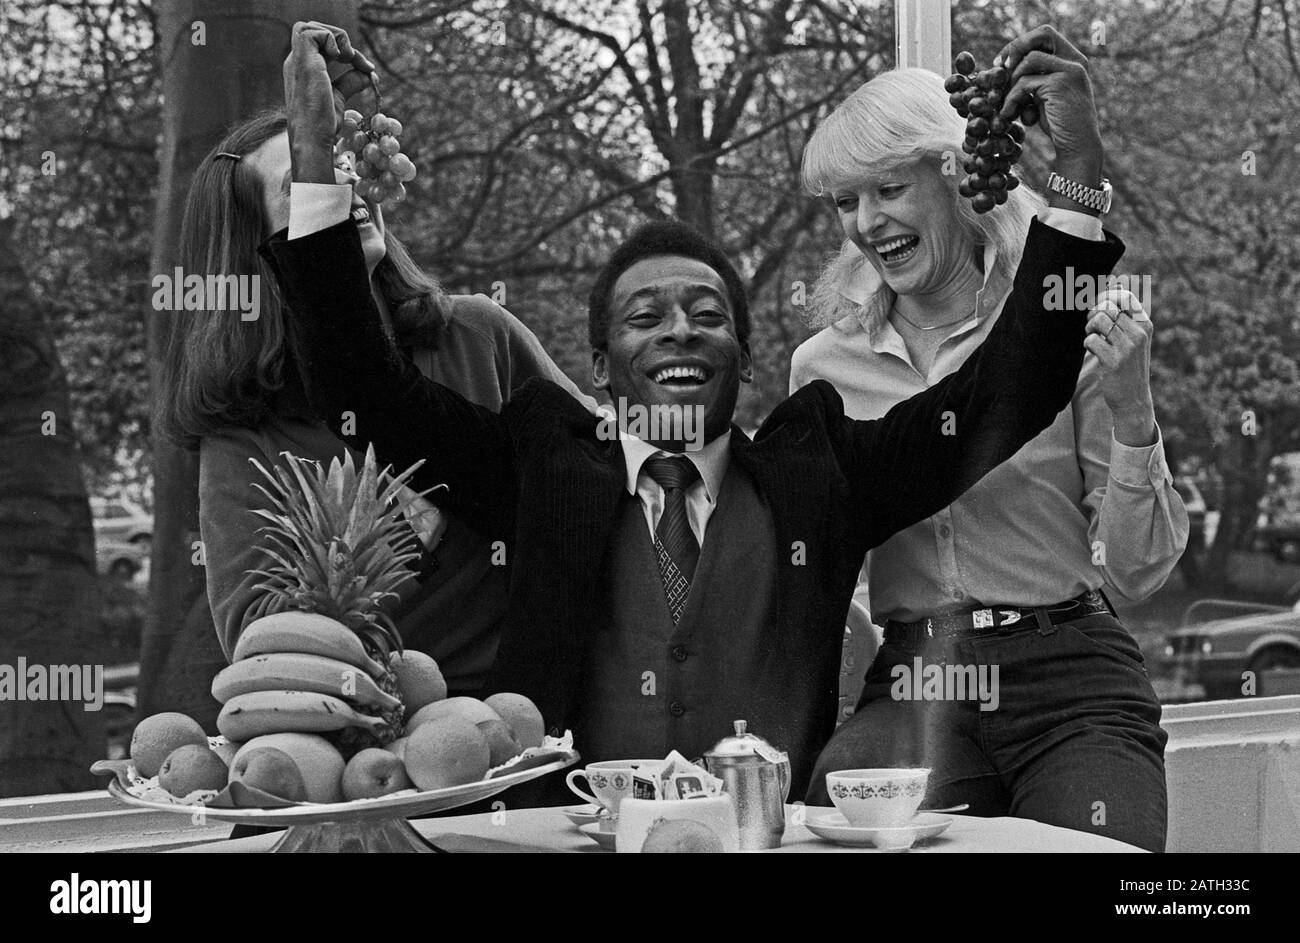 Pele, brasilianischer Fußballspieler, mit zwei Damen beim Frühstücksbuffett in Hamburg, Deutschland 1981. Brazilian football player Pele with two ladies at the breakfast buffet in Hamburg, Germany 1981. Stock Photo